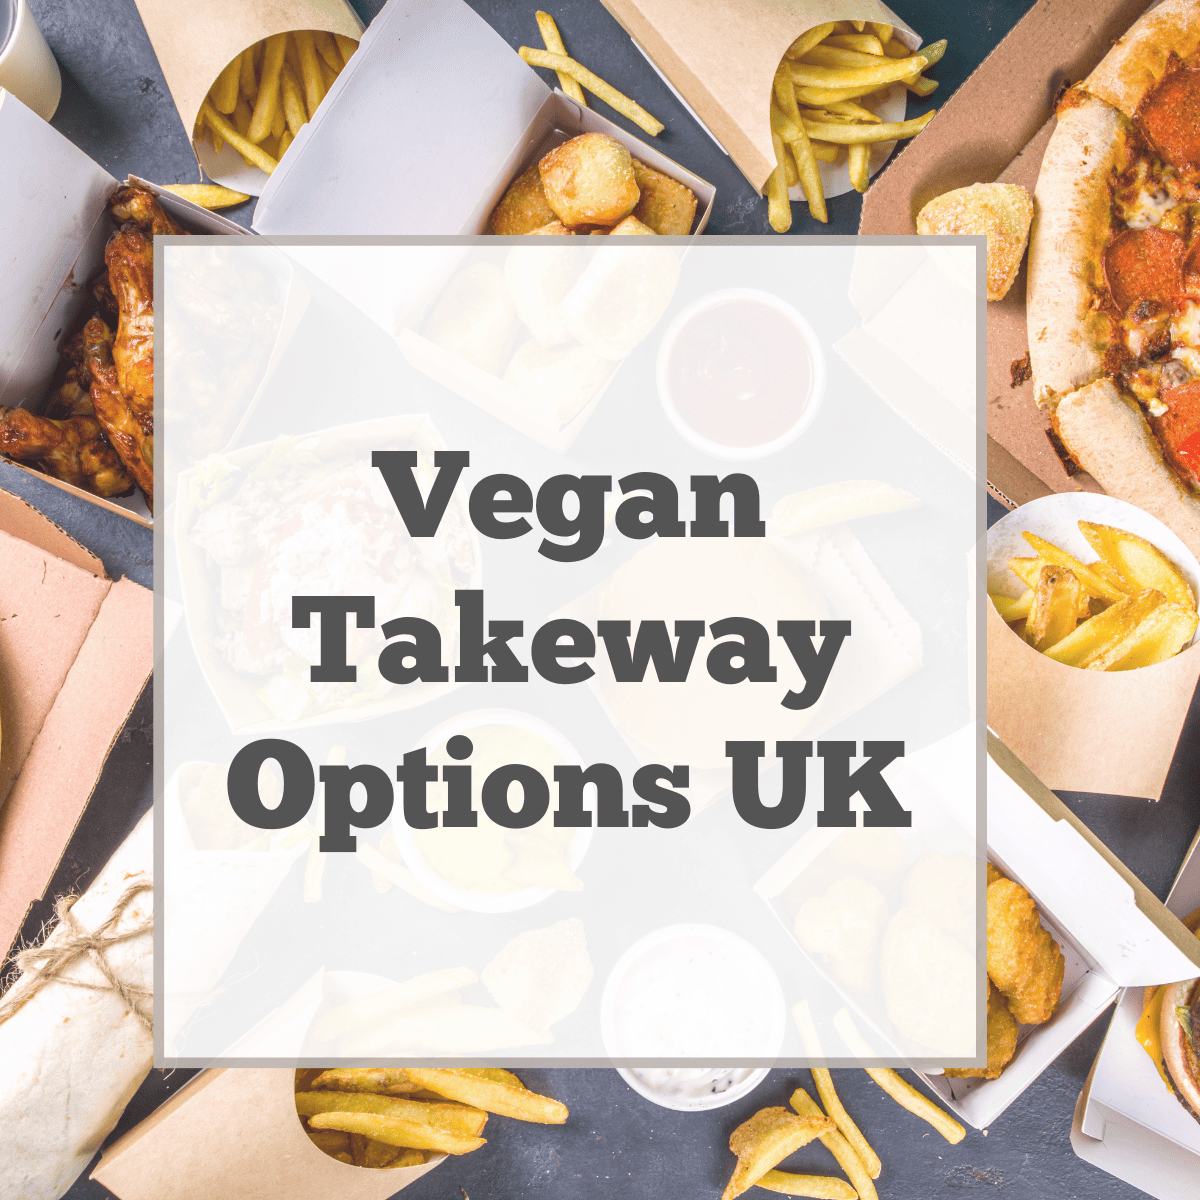 Vegan takeway options in the UK.